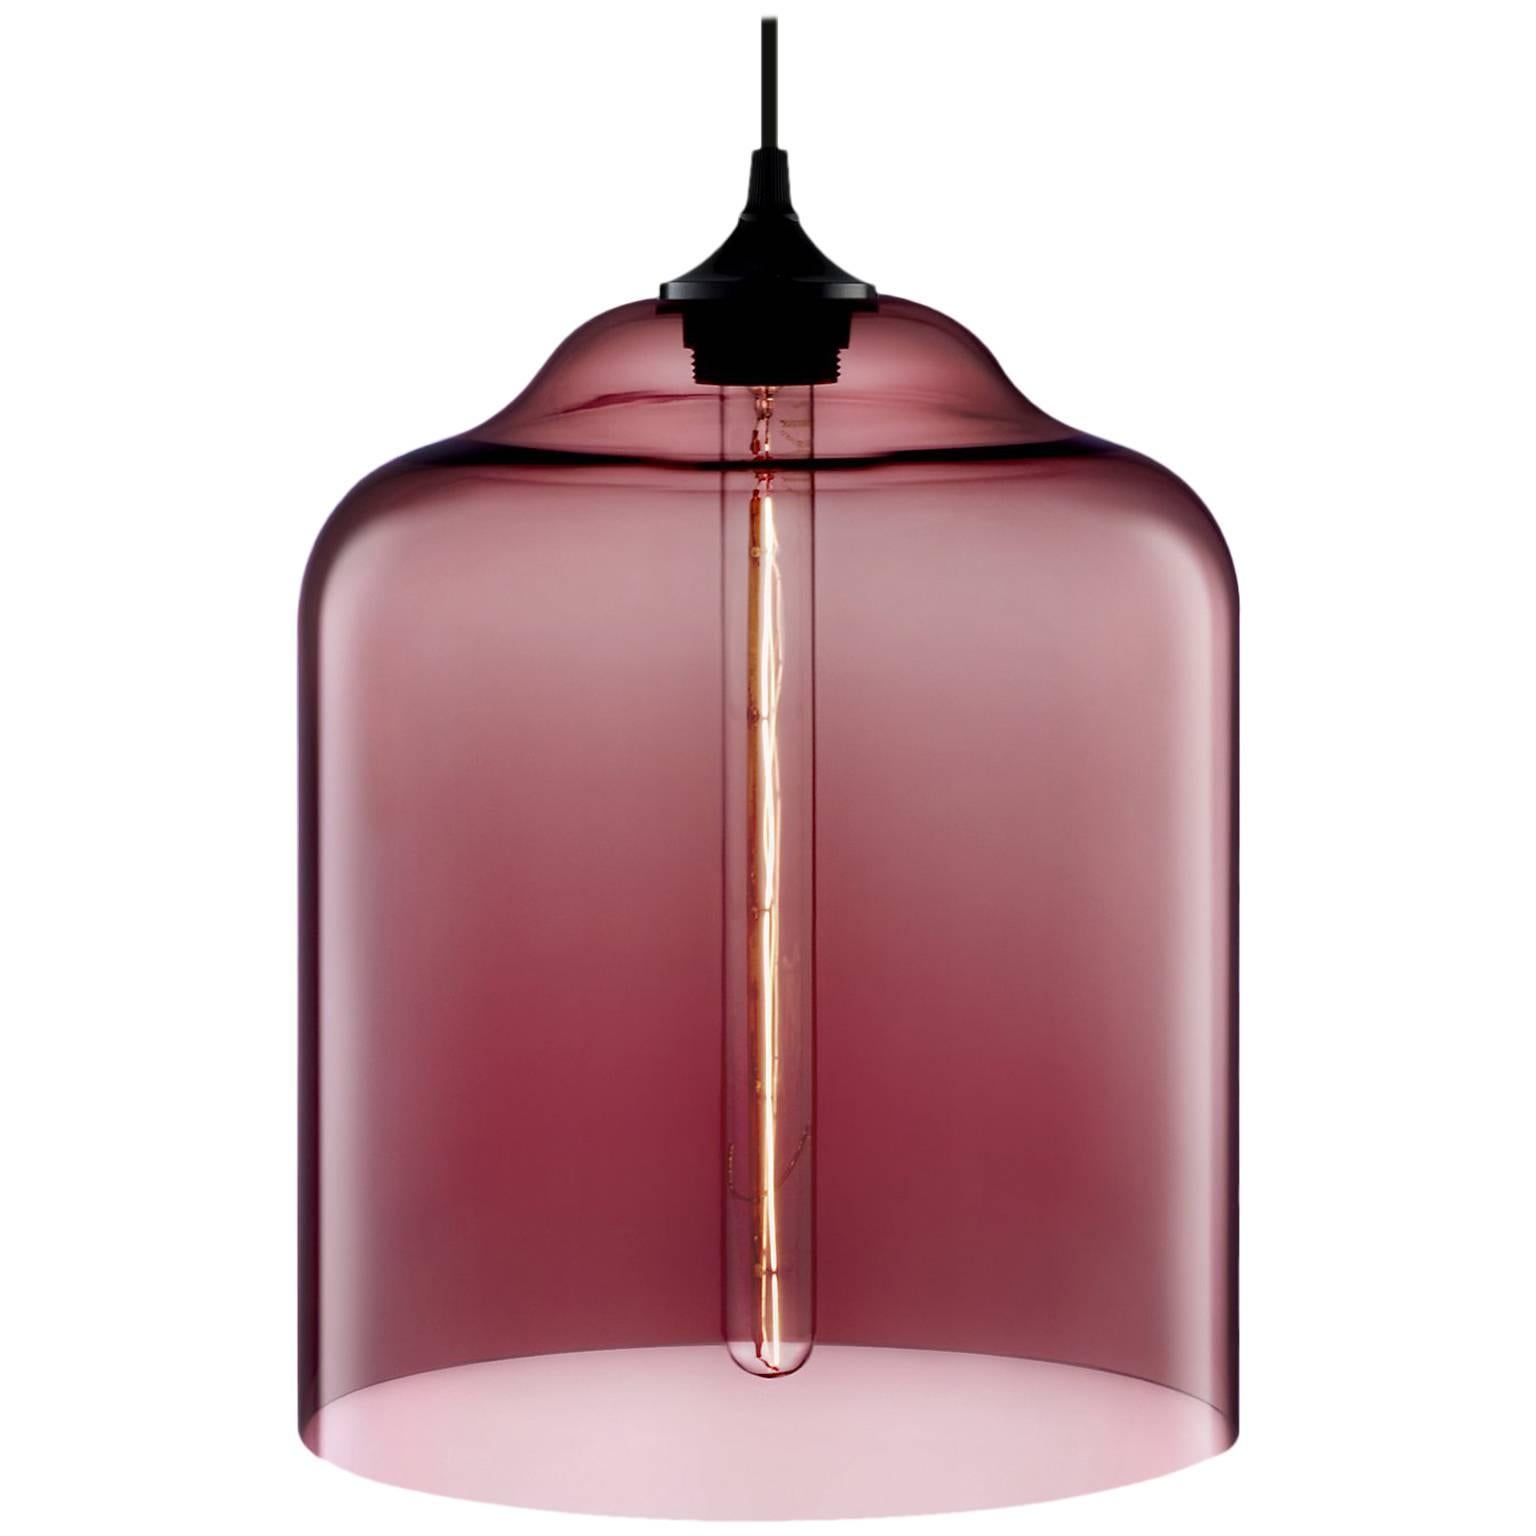 Lámpara colgante moderna de cristal soplado a mano Bell Jar Plum, fabricada en EE.UU.